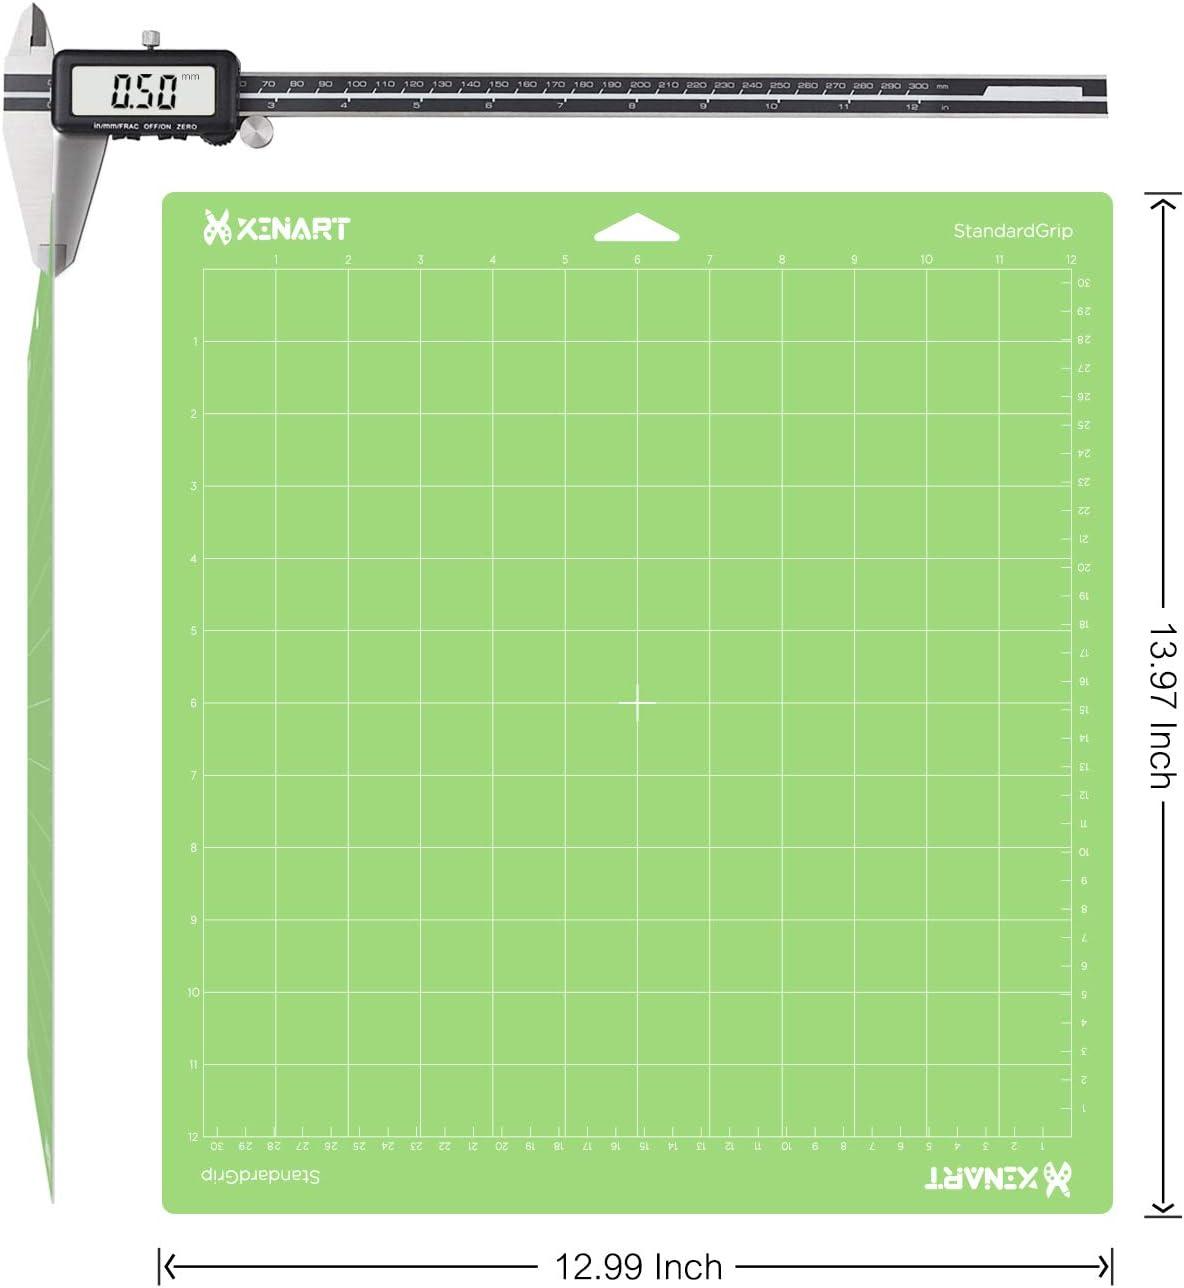 XINART StandardGrip Cutting Mat for Cricut Maker 3/Maker/Explore 3